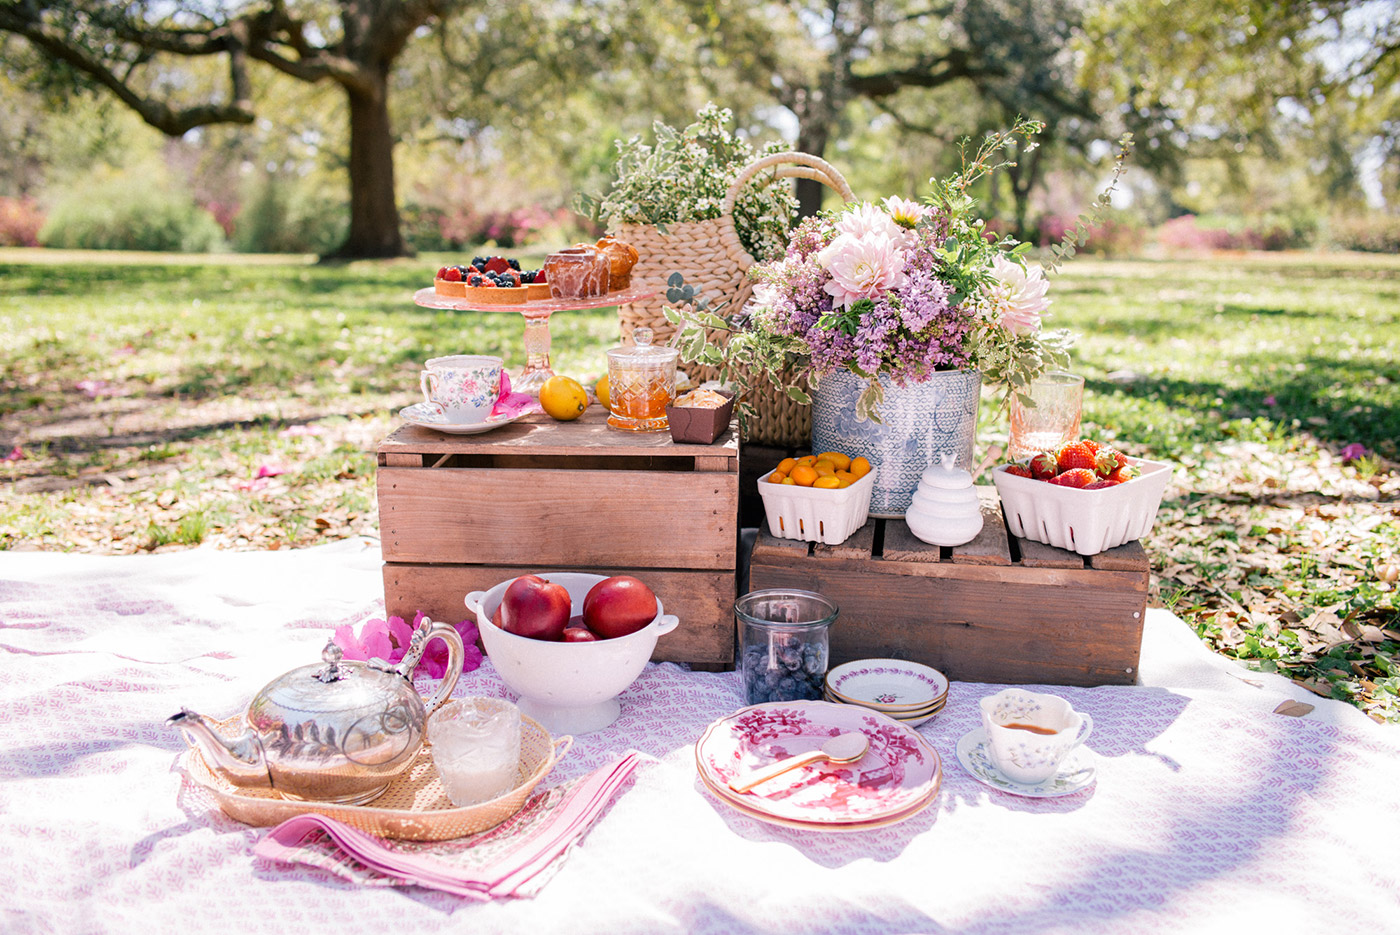 A very British picnic στον υπέροχο κήπο του Πύργου Πετρέζα